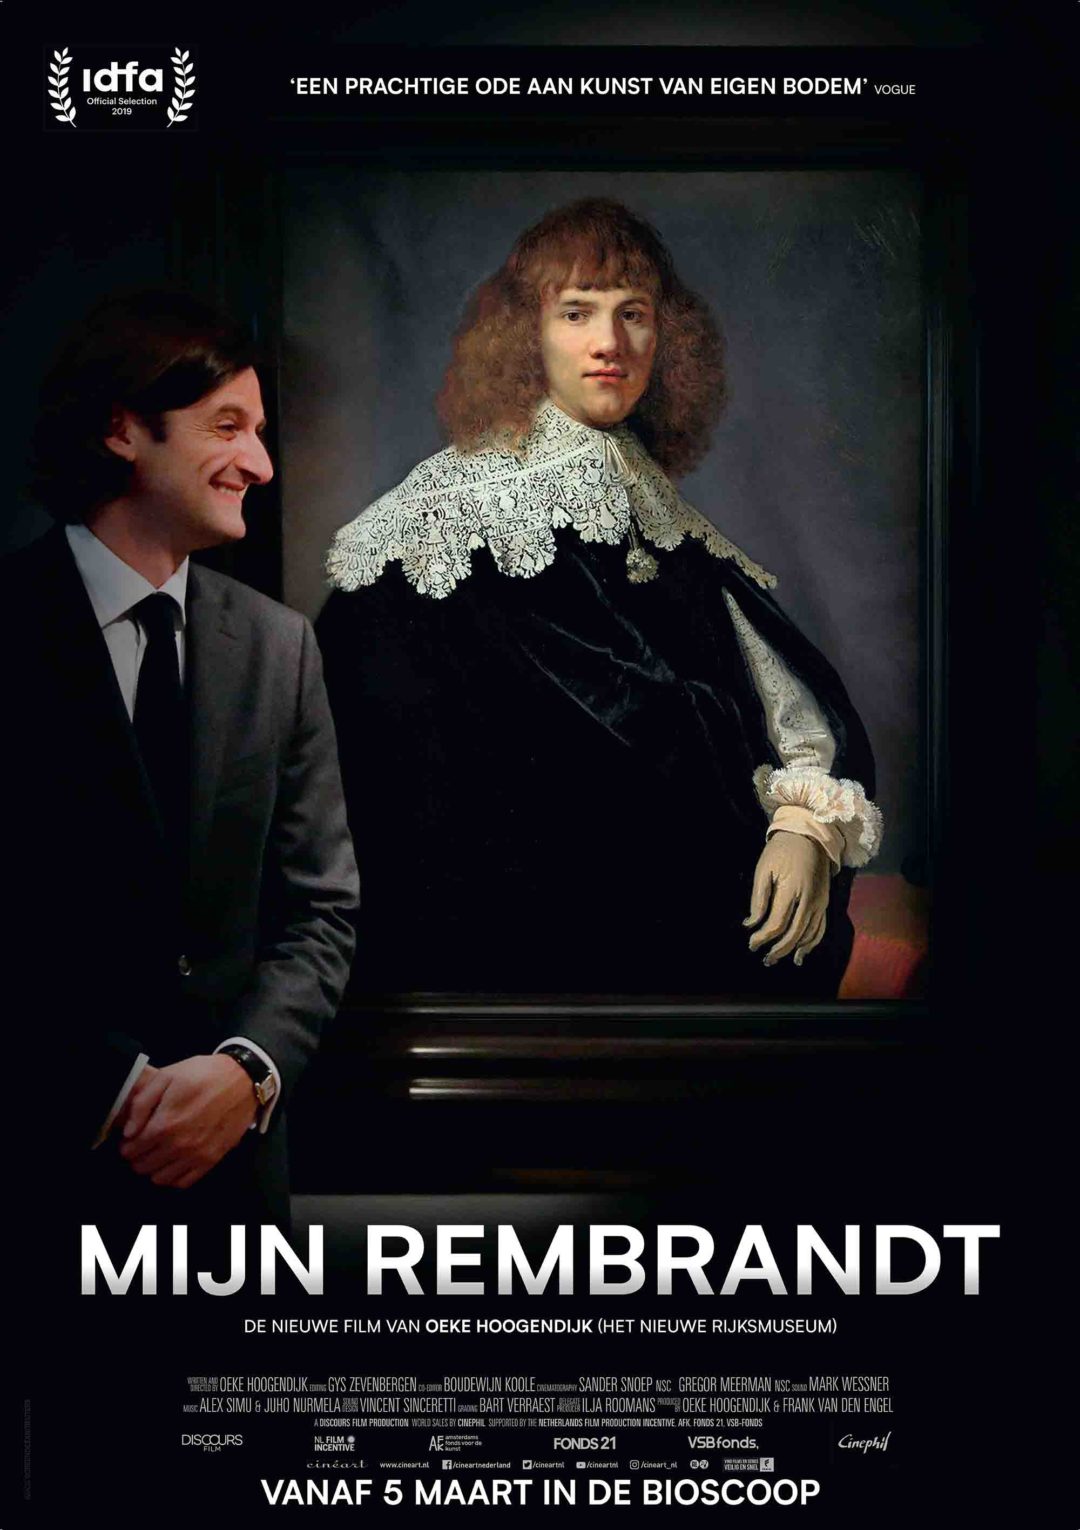 Mijn-Rembrandt_ps_1_jpg_sd-high.jpg